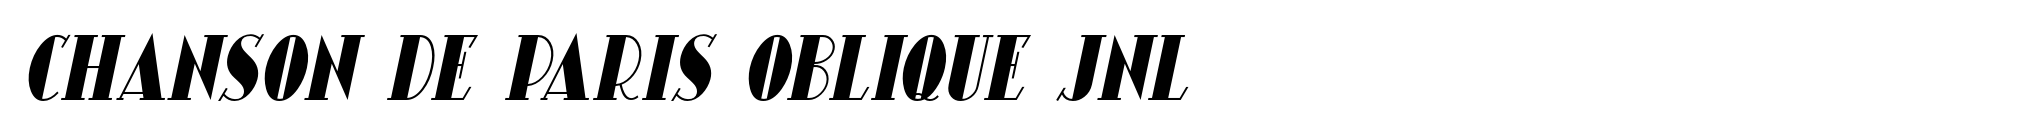 Chanson De Paris Oblique JNL image